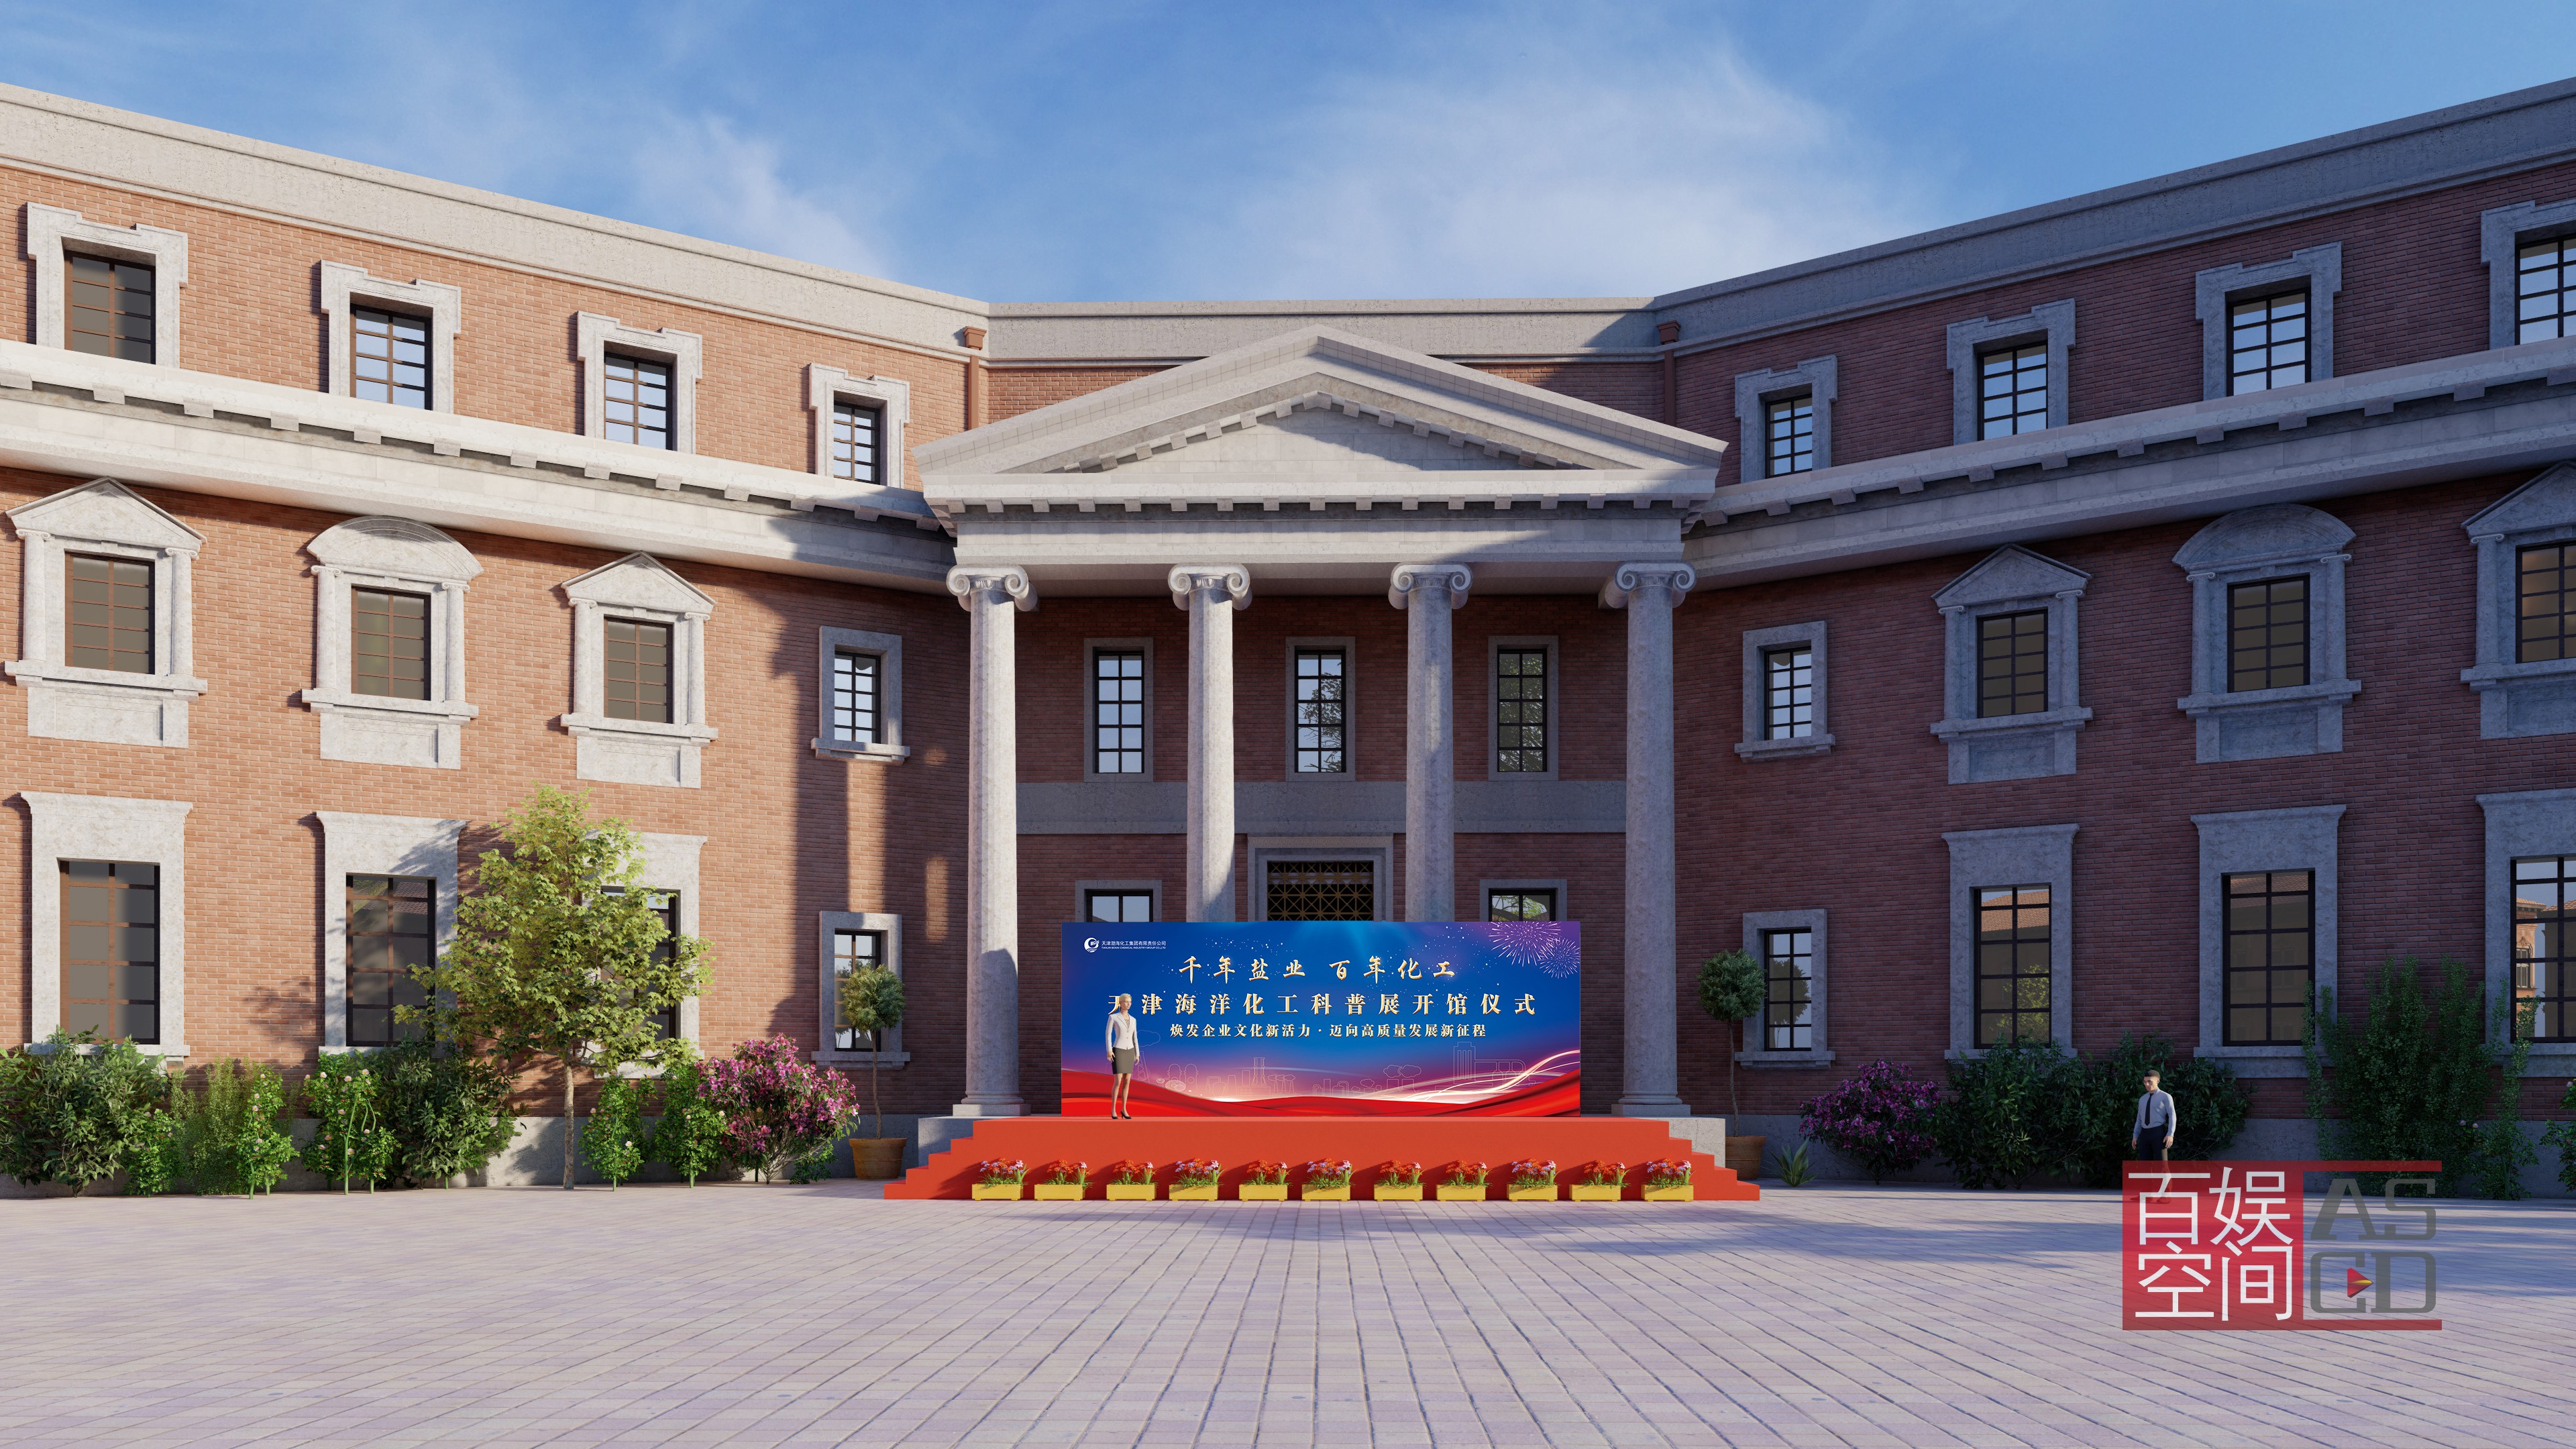 渤海化工海洋科普展馆揭幕仪式